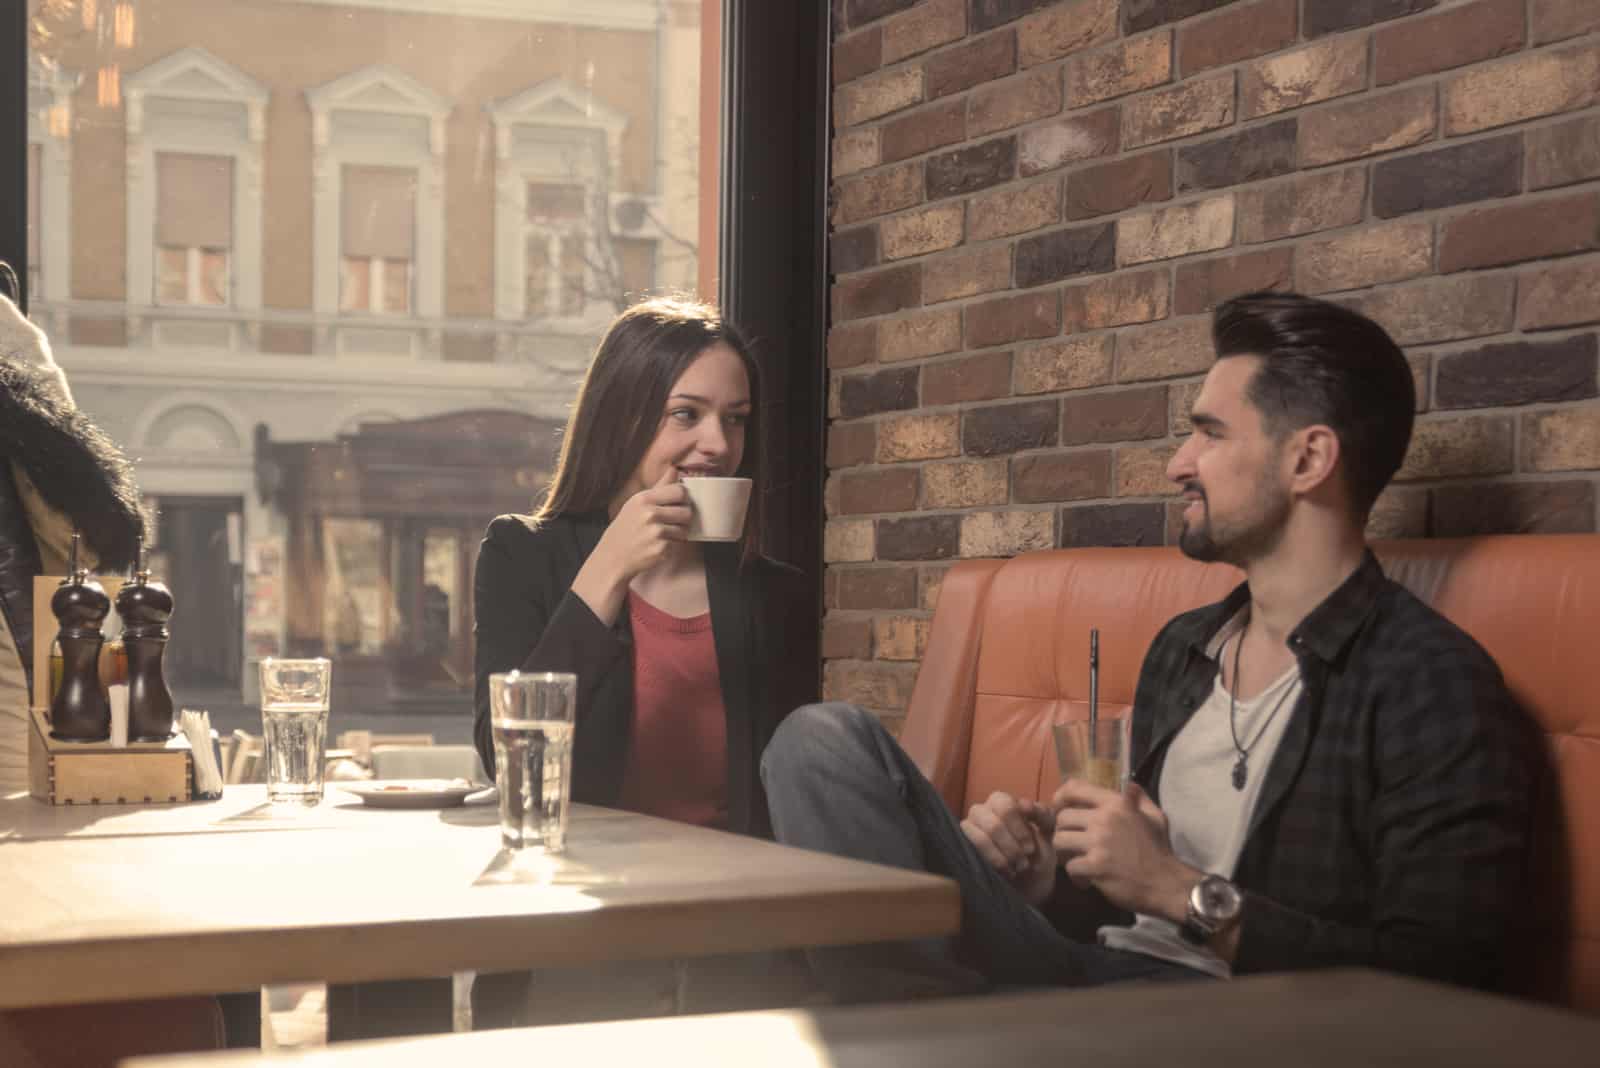 l'homme parle à la femme pendant qu'elle boit du café